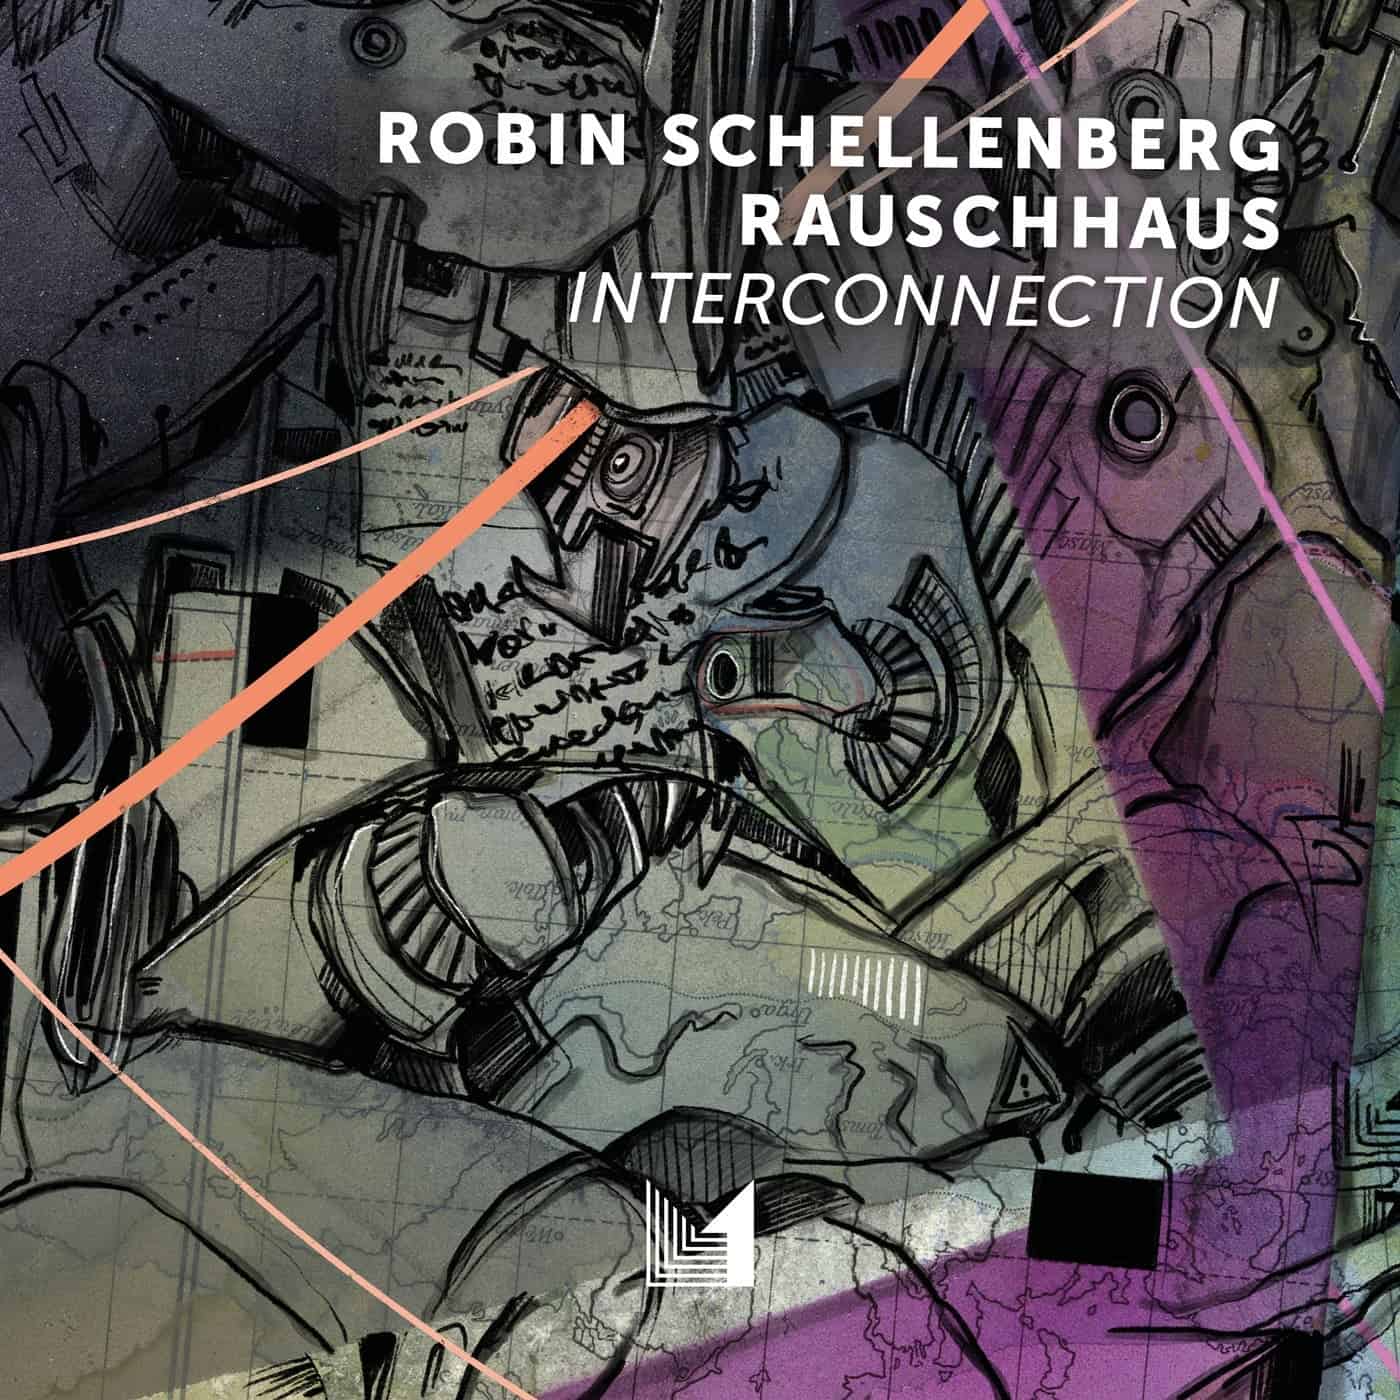 Download Rauschhaus, Robin Schellenberg - Interconnection on Electrobuzz